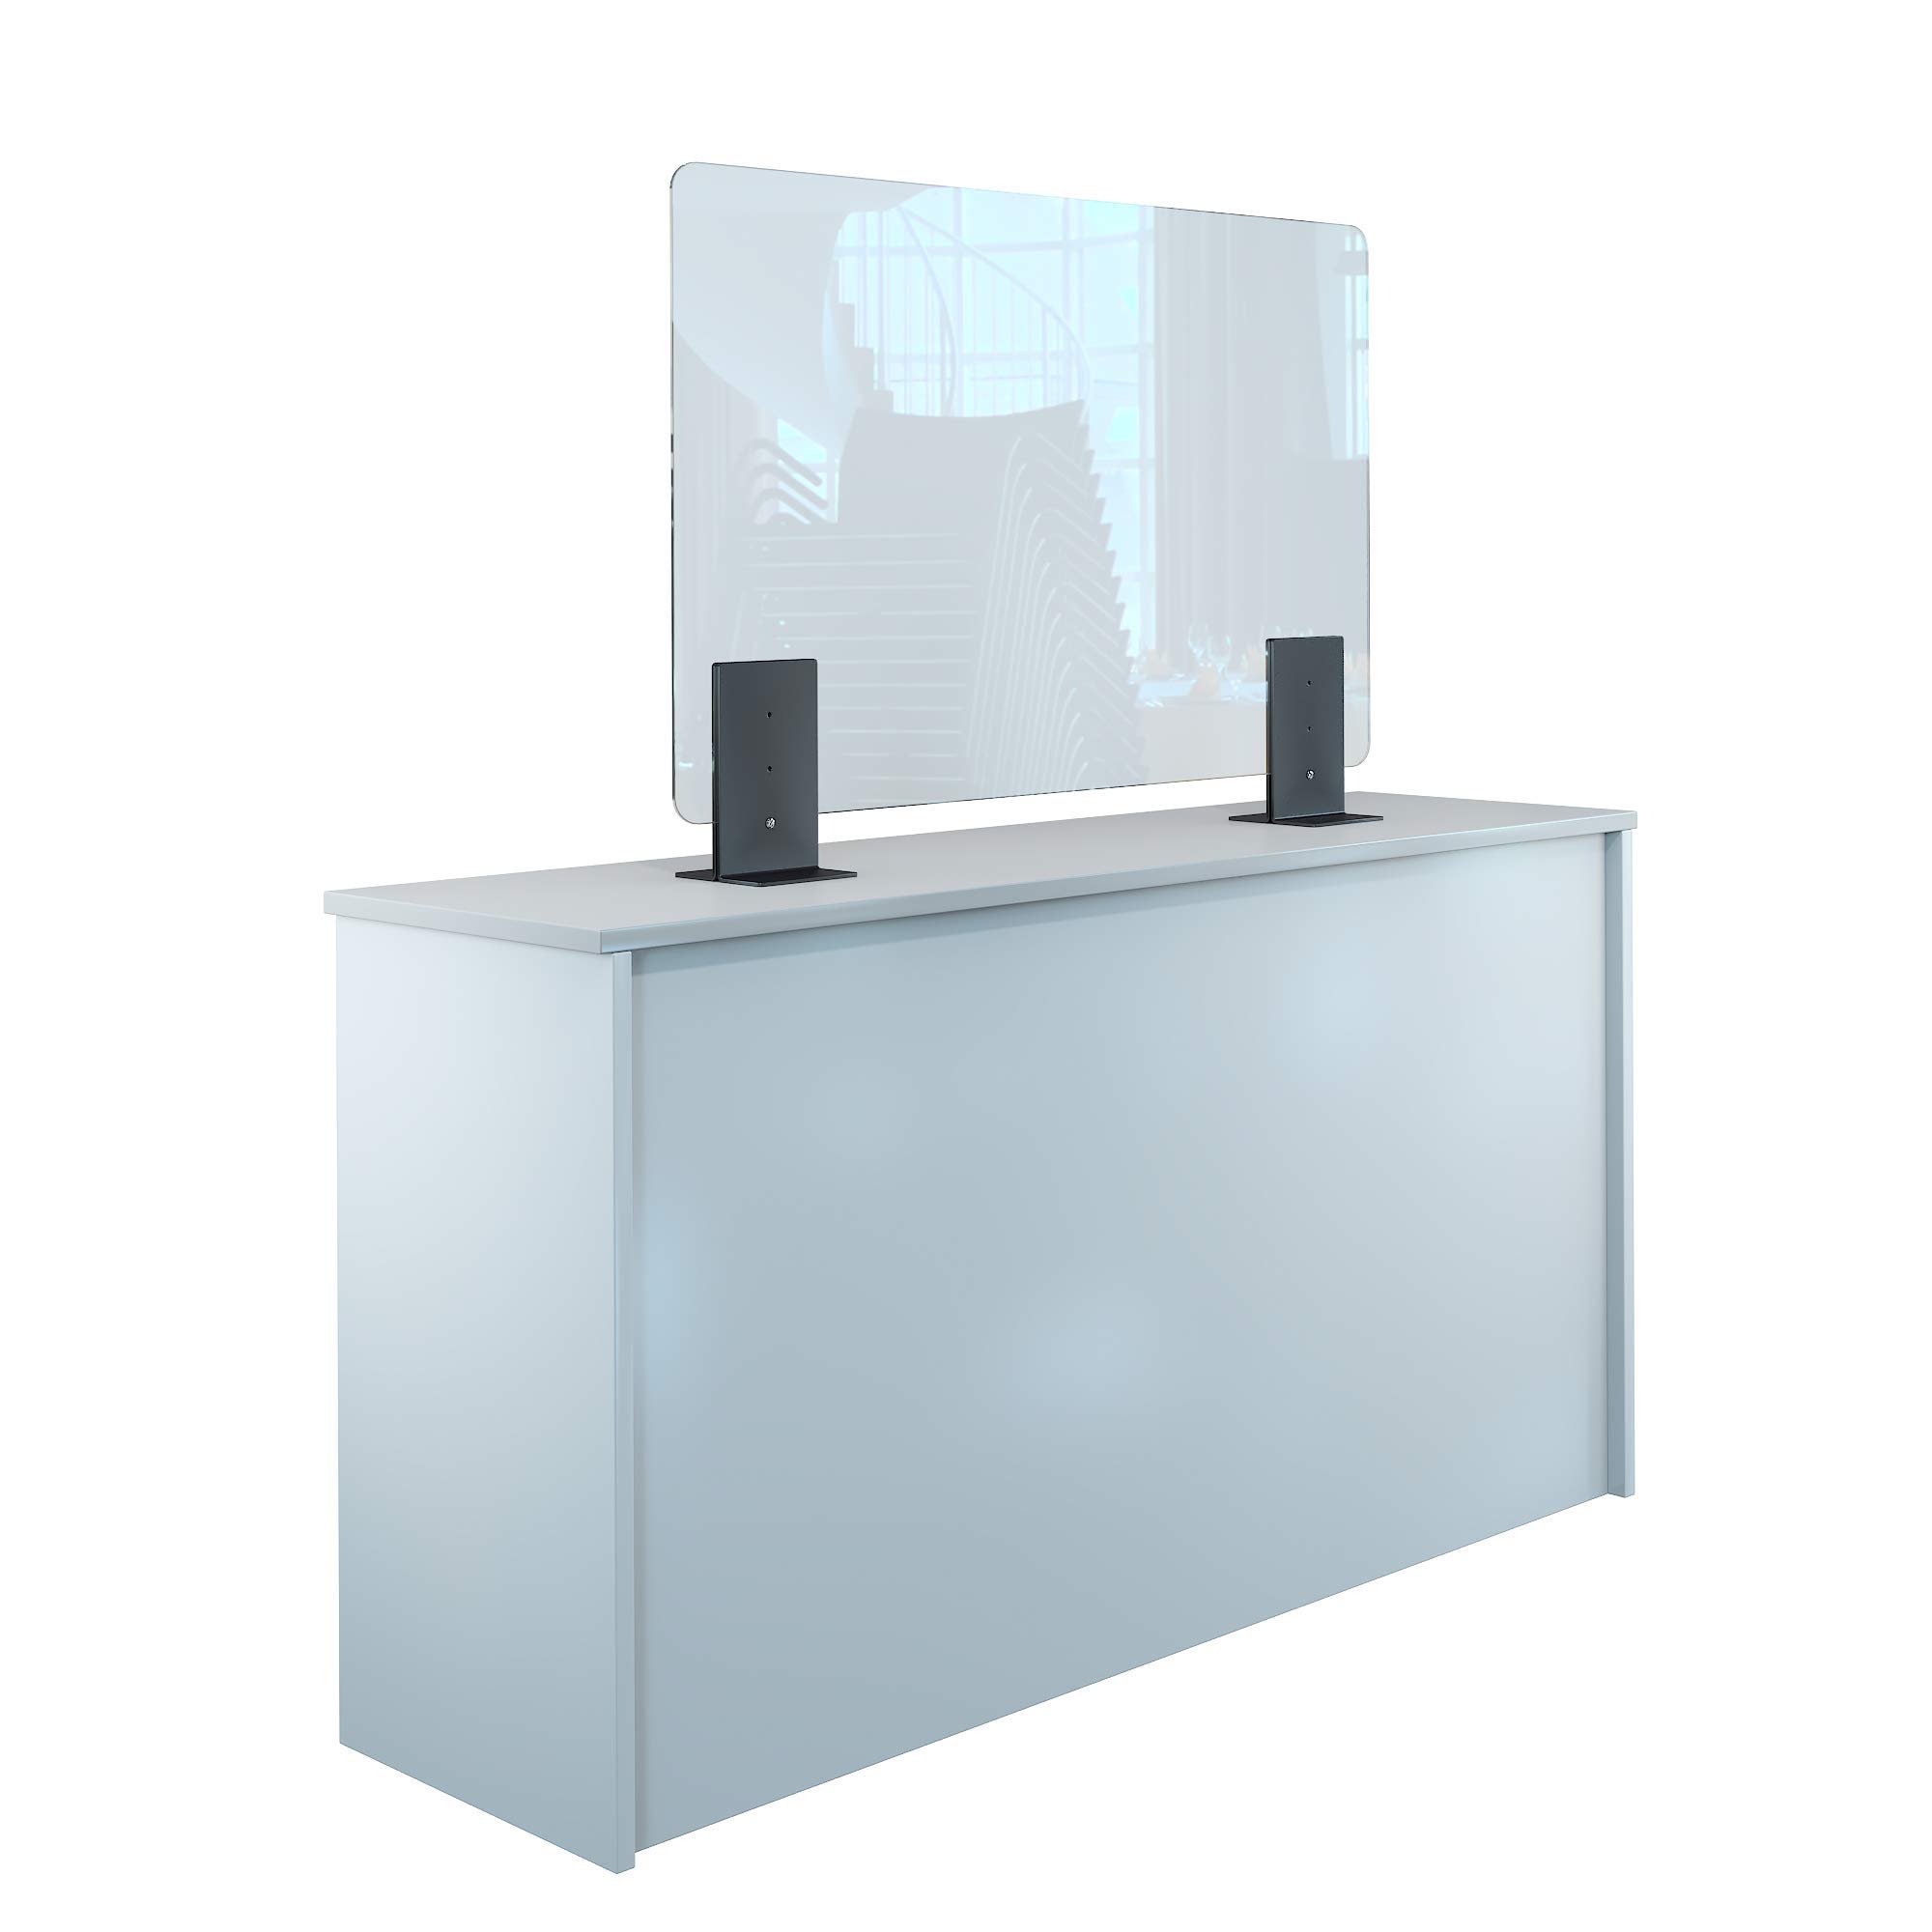 Rulopak Thekenaufsteller Trennwand/Spuckschutz Acrylglas klar mit Metallfüßen Anthrazit (Höhe justierbar) (B 100 x H 60 cm)